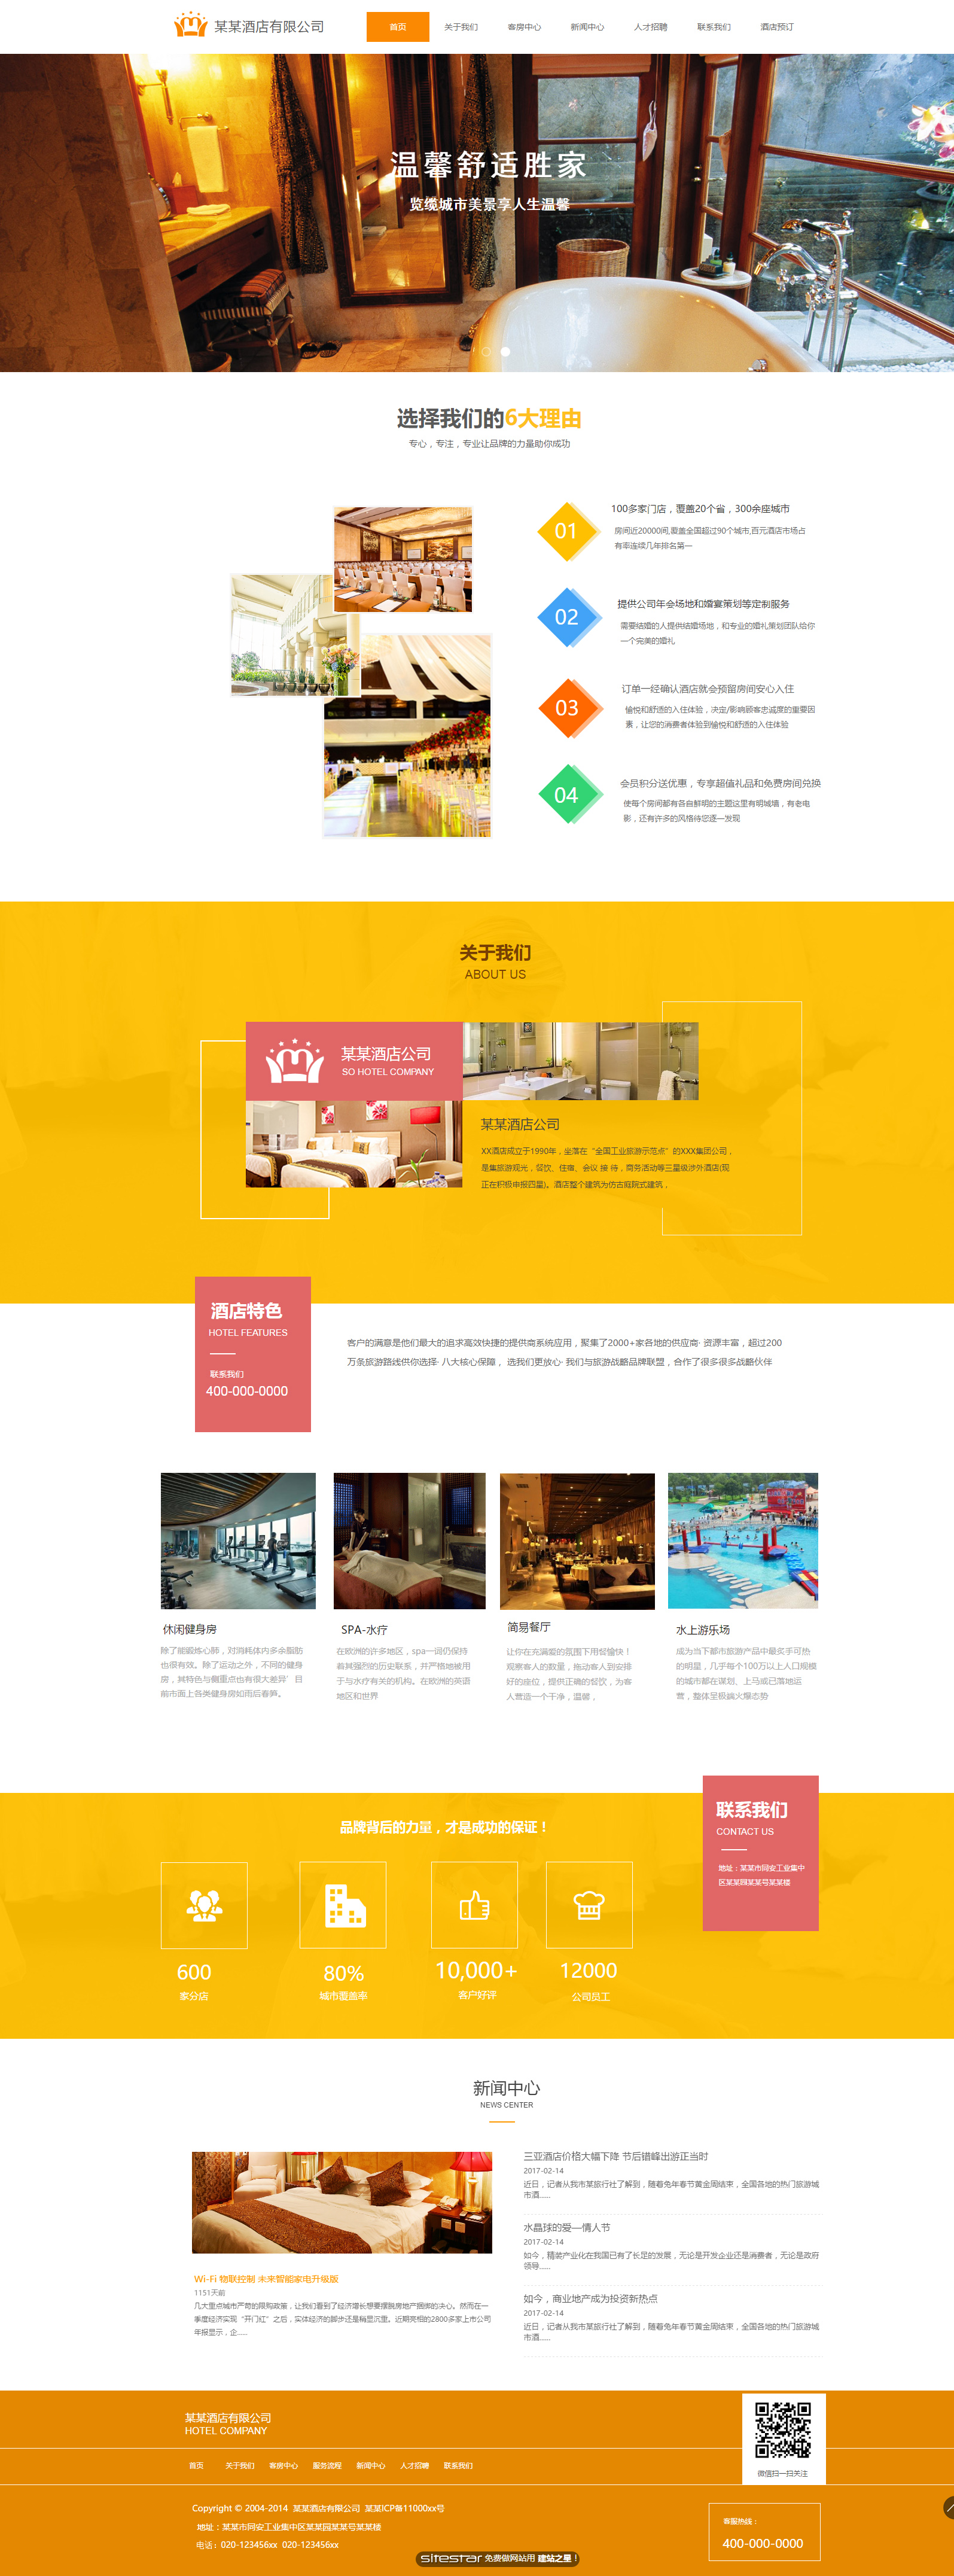 企业网站精美模板-hotels-230